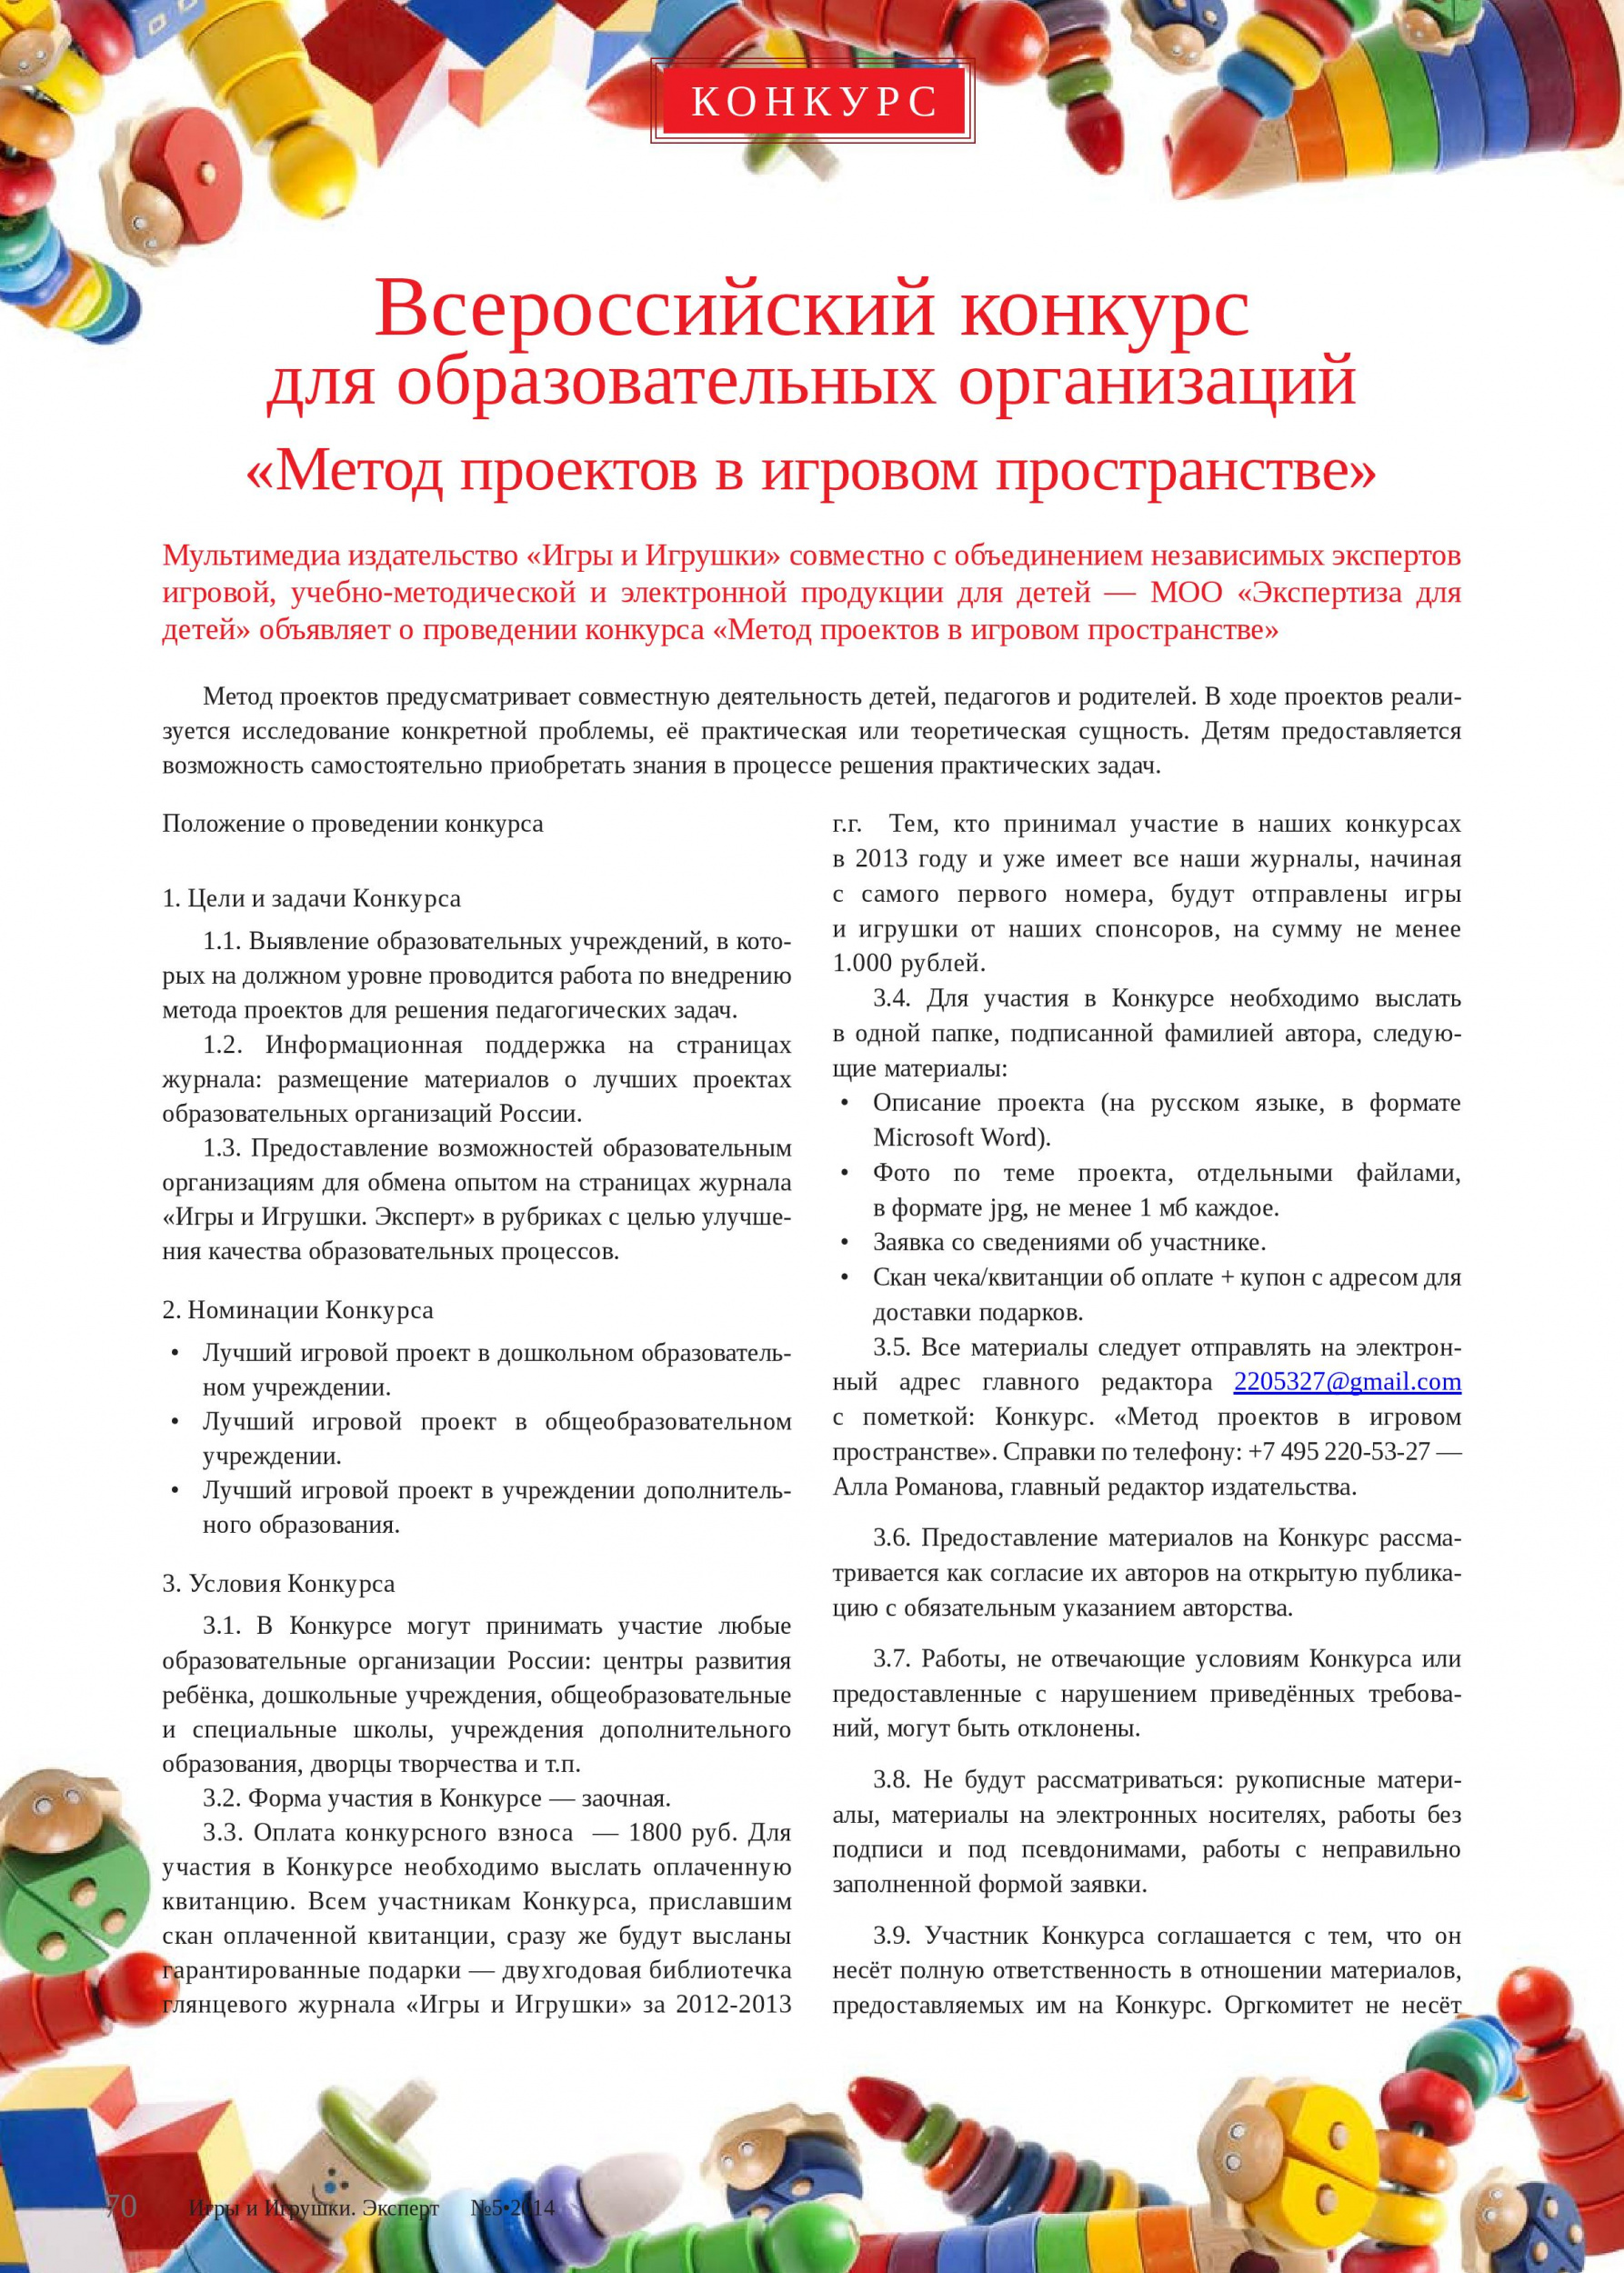 Всероссийский конкурс для образовательных организаций «Метод проектов в игровом пространстве» 